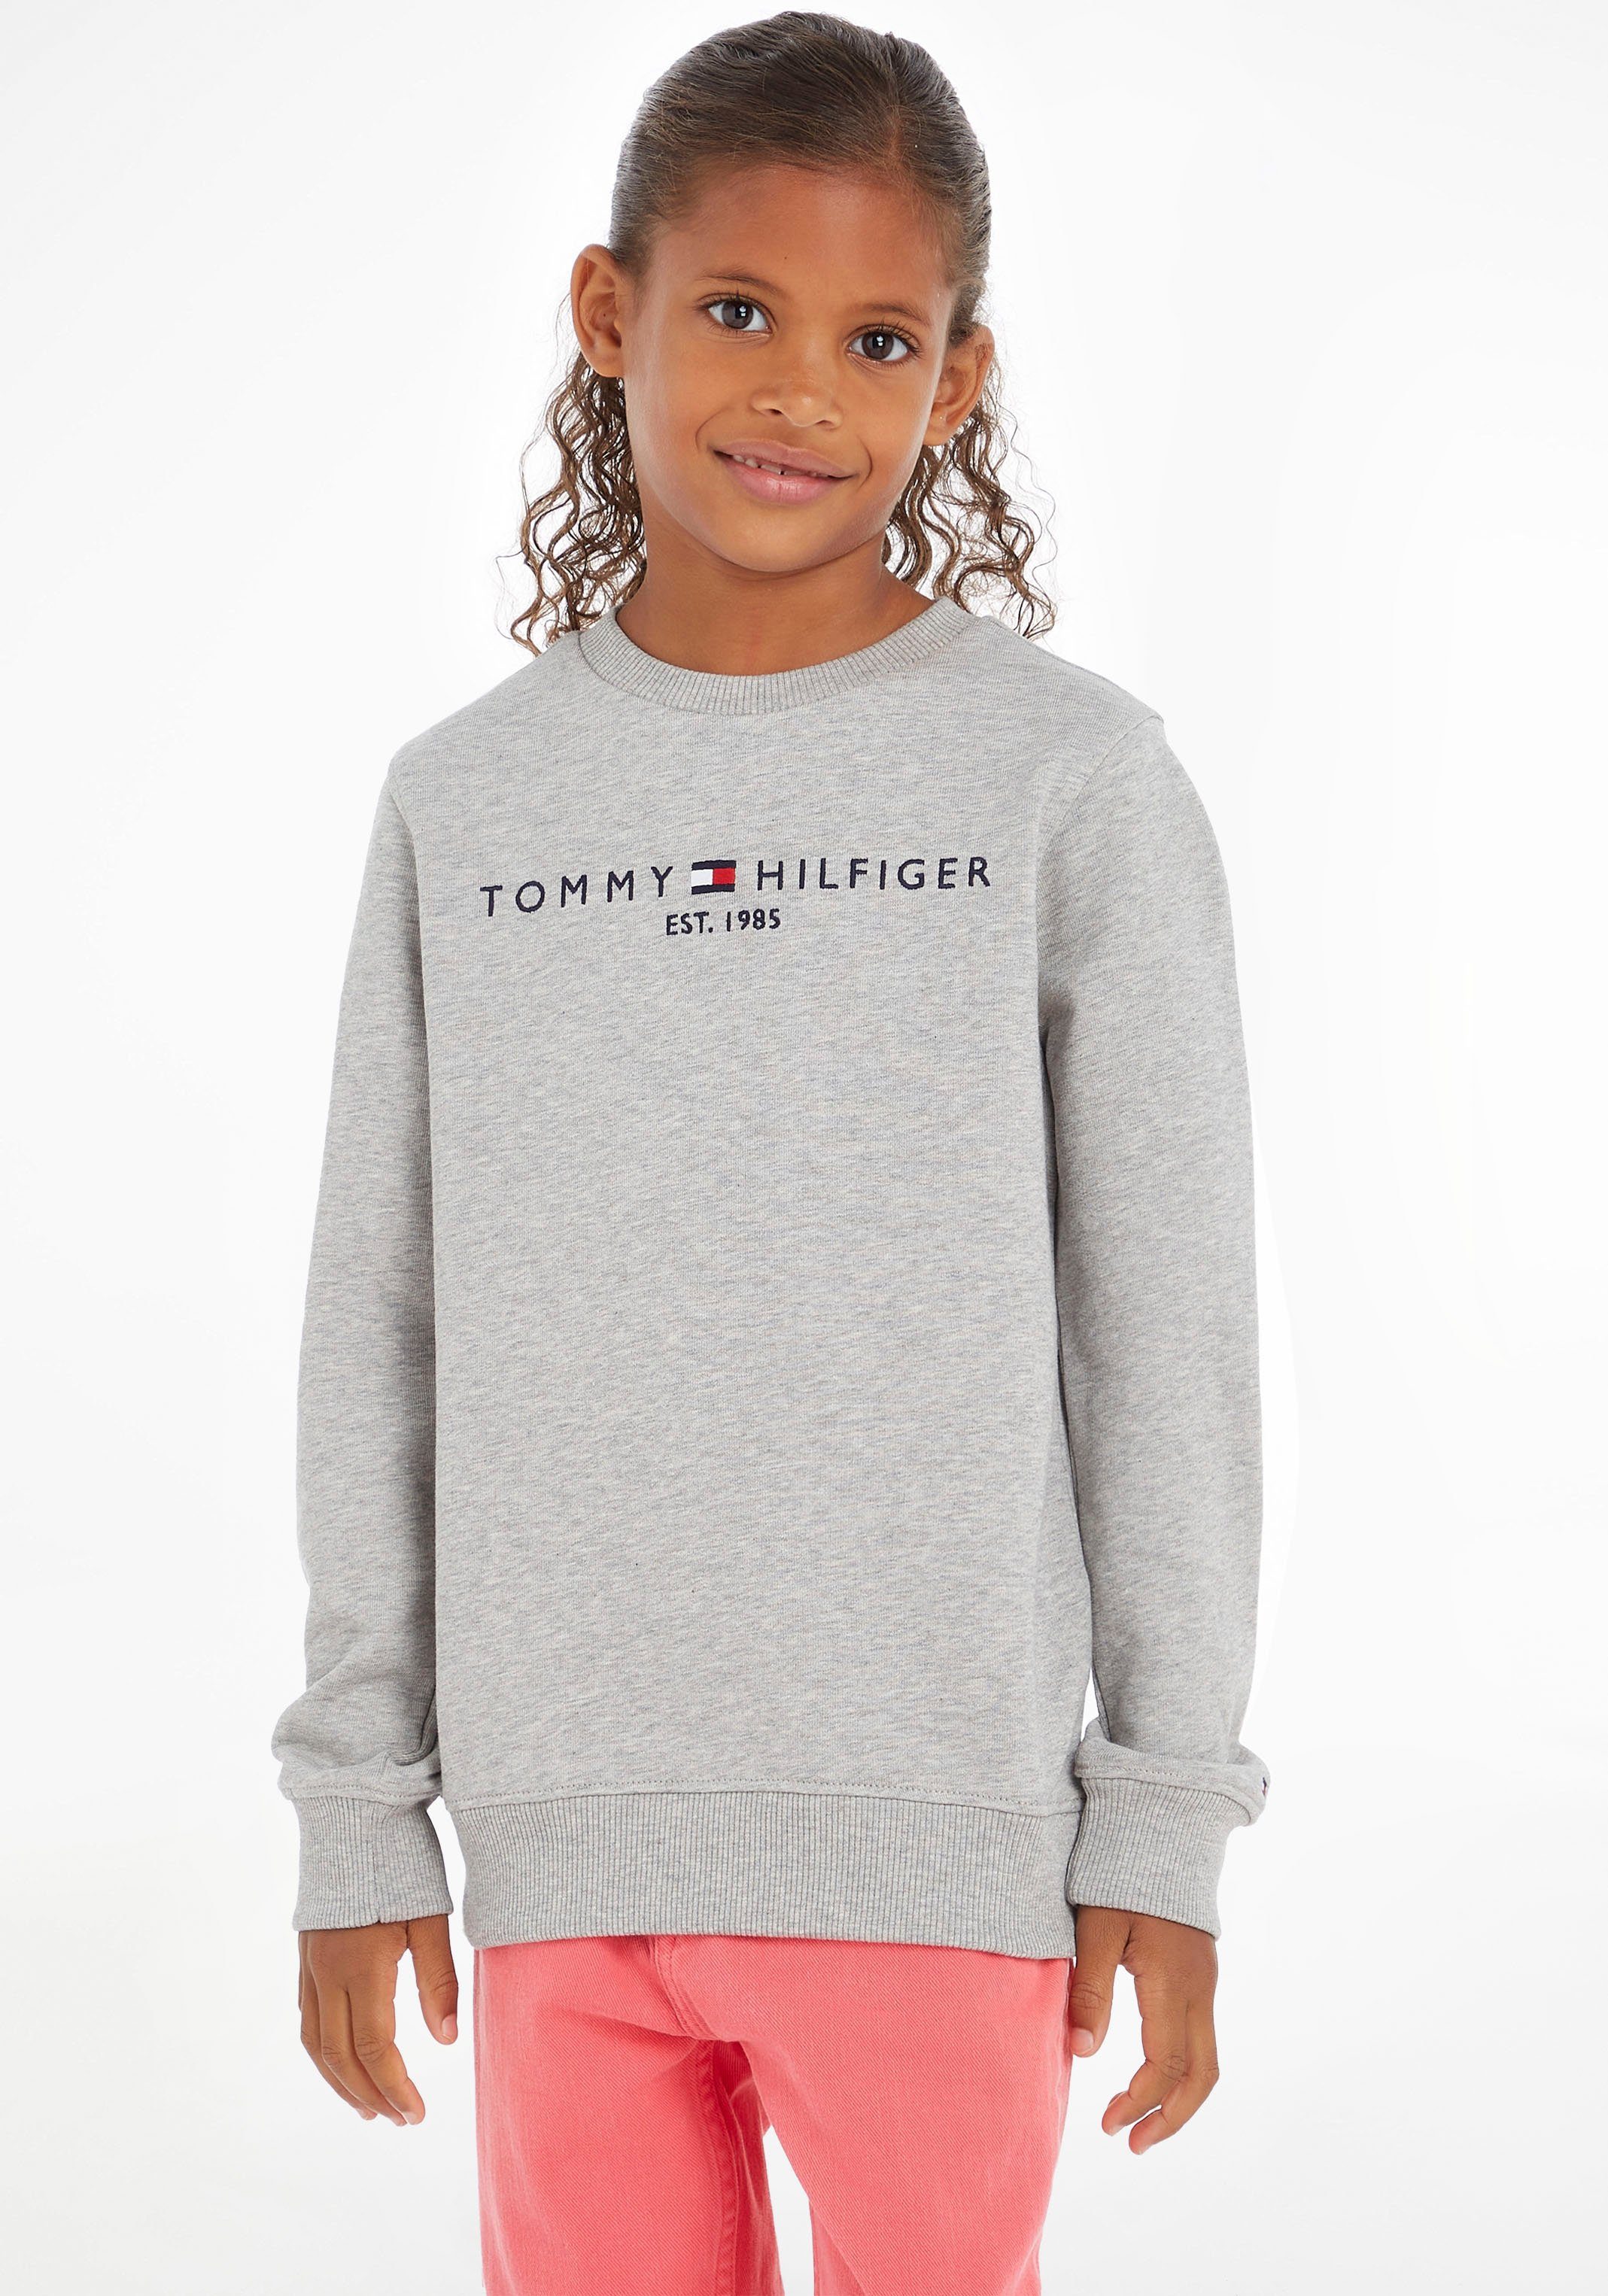 Kids Junior Kinder Mädchen und ESSENTIAL Hilfiger Sweatshirt MiniMe,für SWEATSHIRT Tommy Jungen